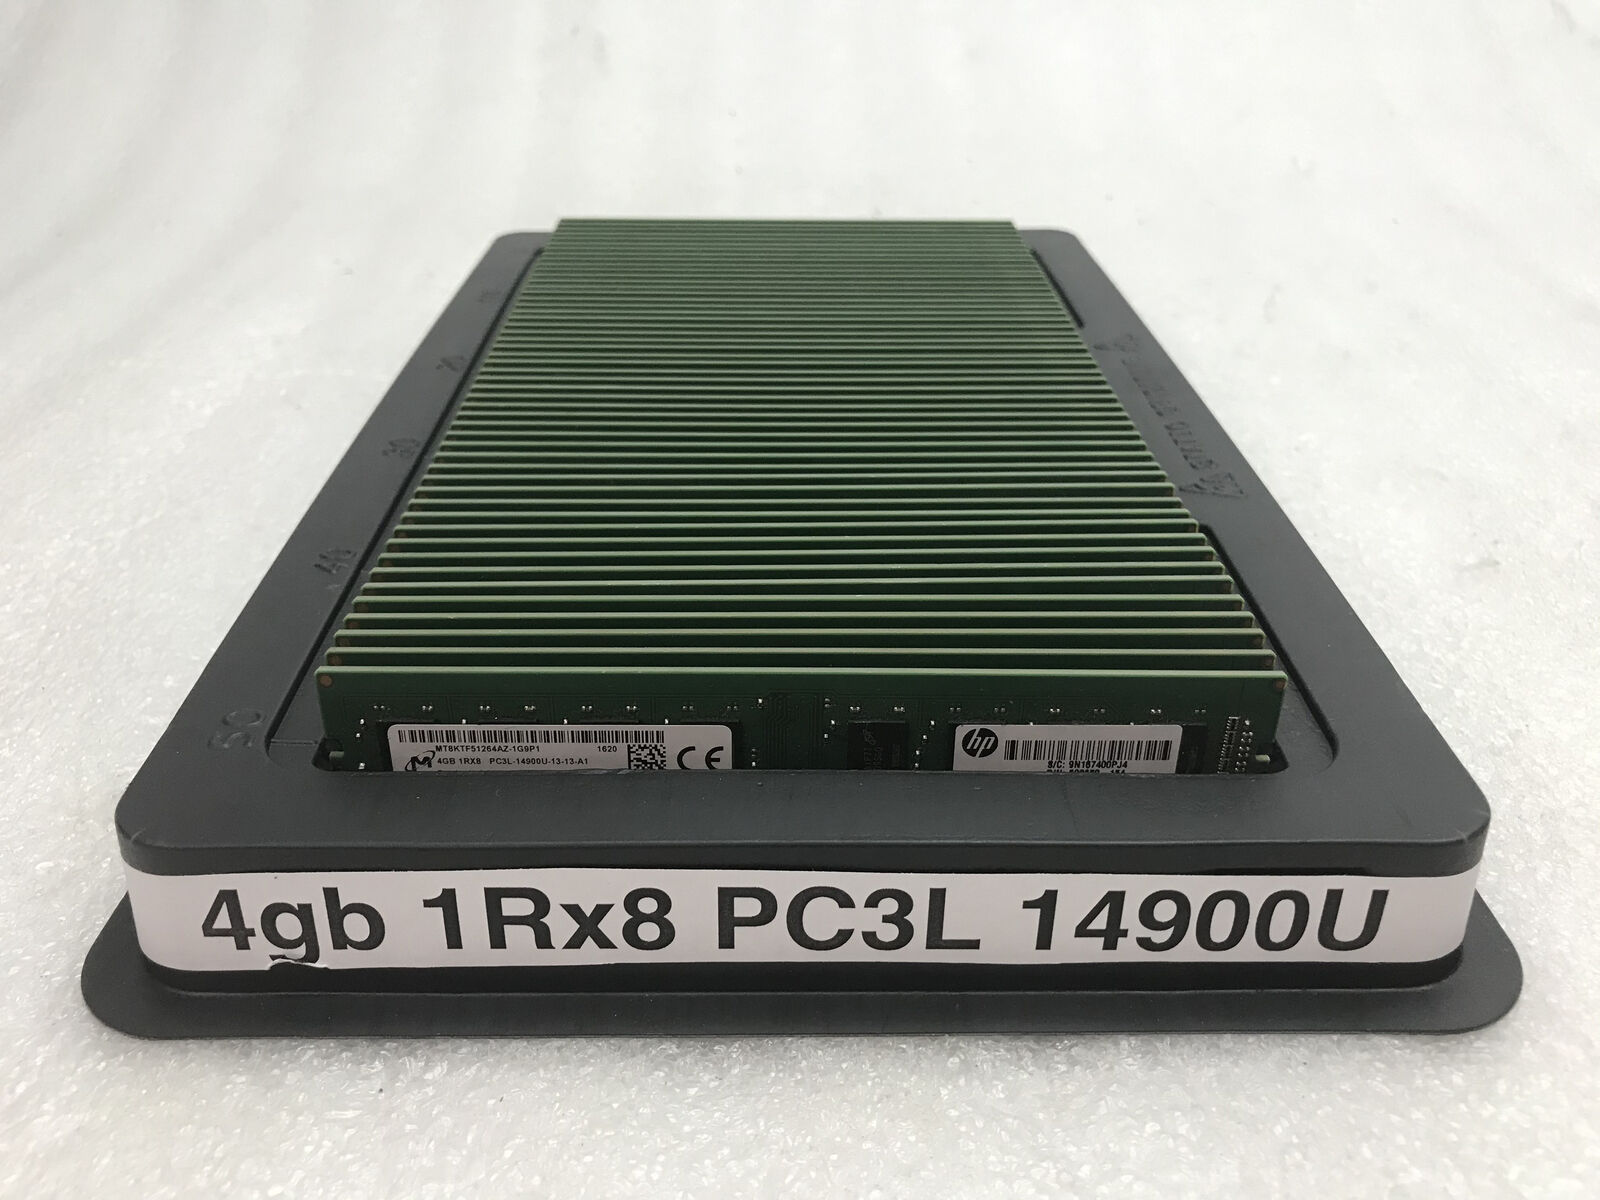 Lot of 50 RAM DIMM Micron 4GB 1Rx8 DDR3L-1866MHz PC3L-14900U non-ECC 200GB total